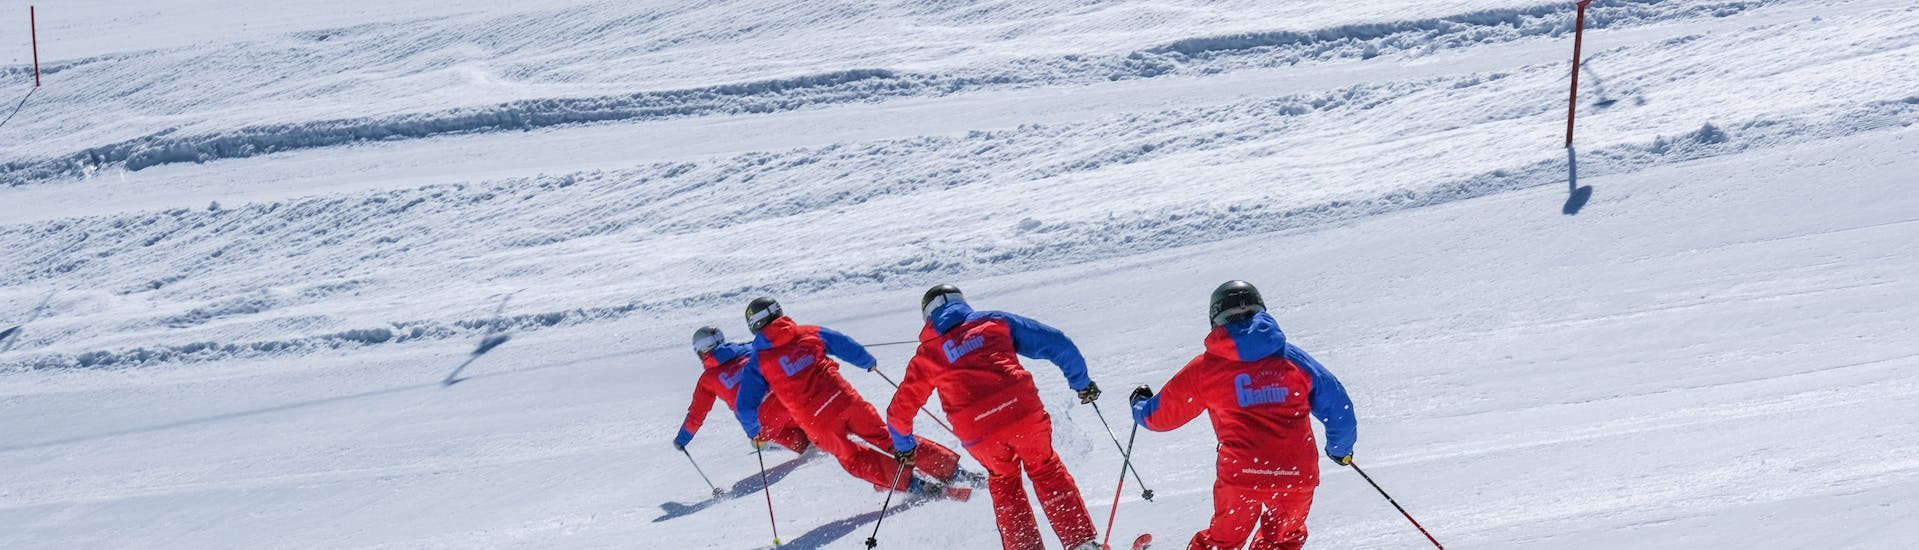 Clases de esquí para niños a partir de 14 años para principiantes.